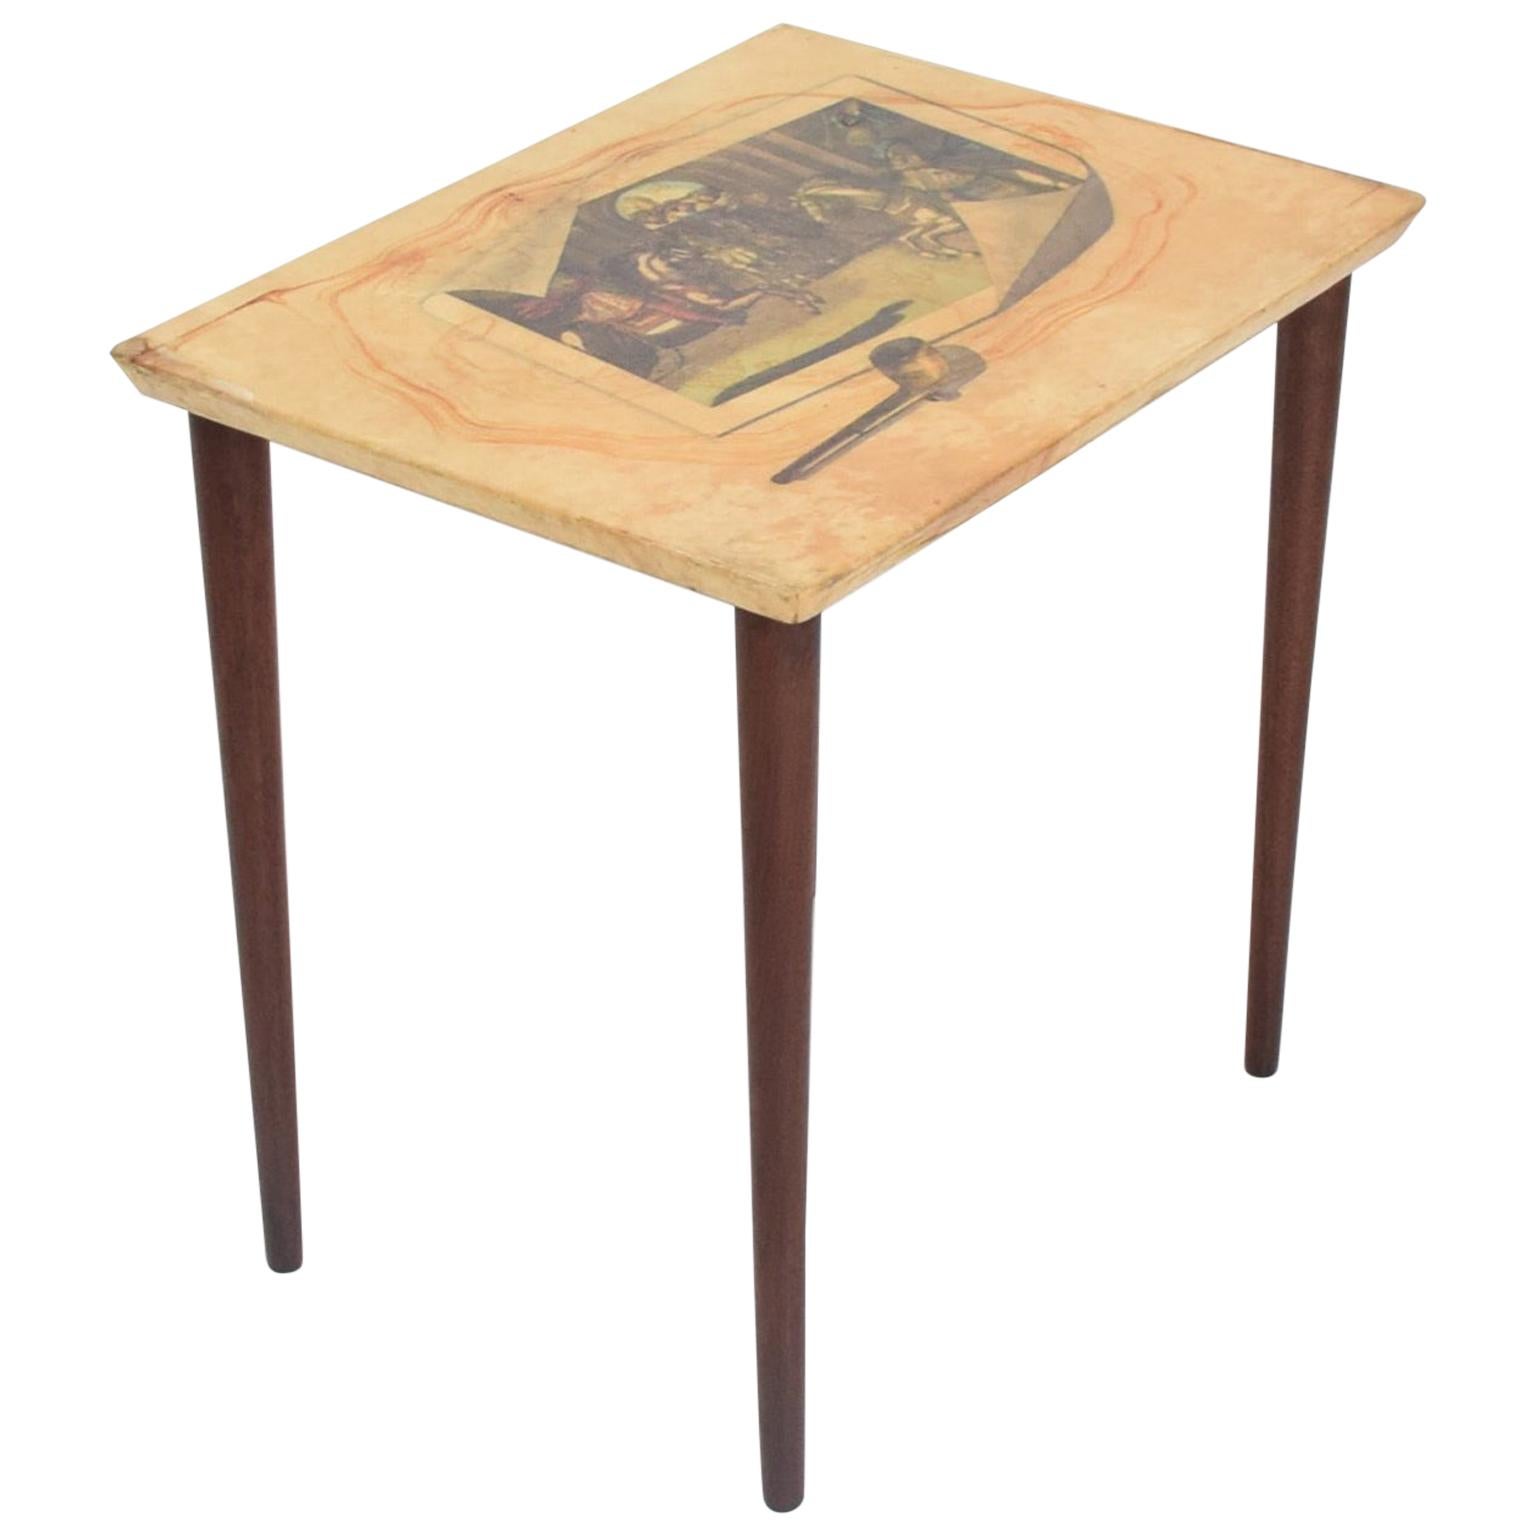 ALDO TURA Fornasetti Art Side Table in Goatskin Mahogany ITALY 1950s